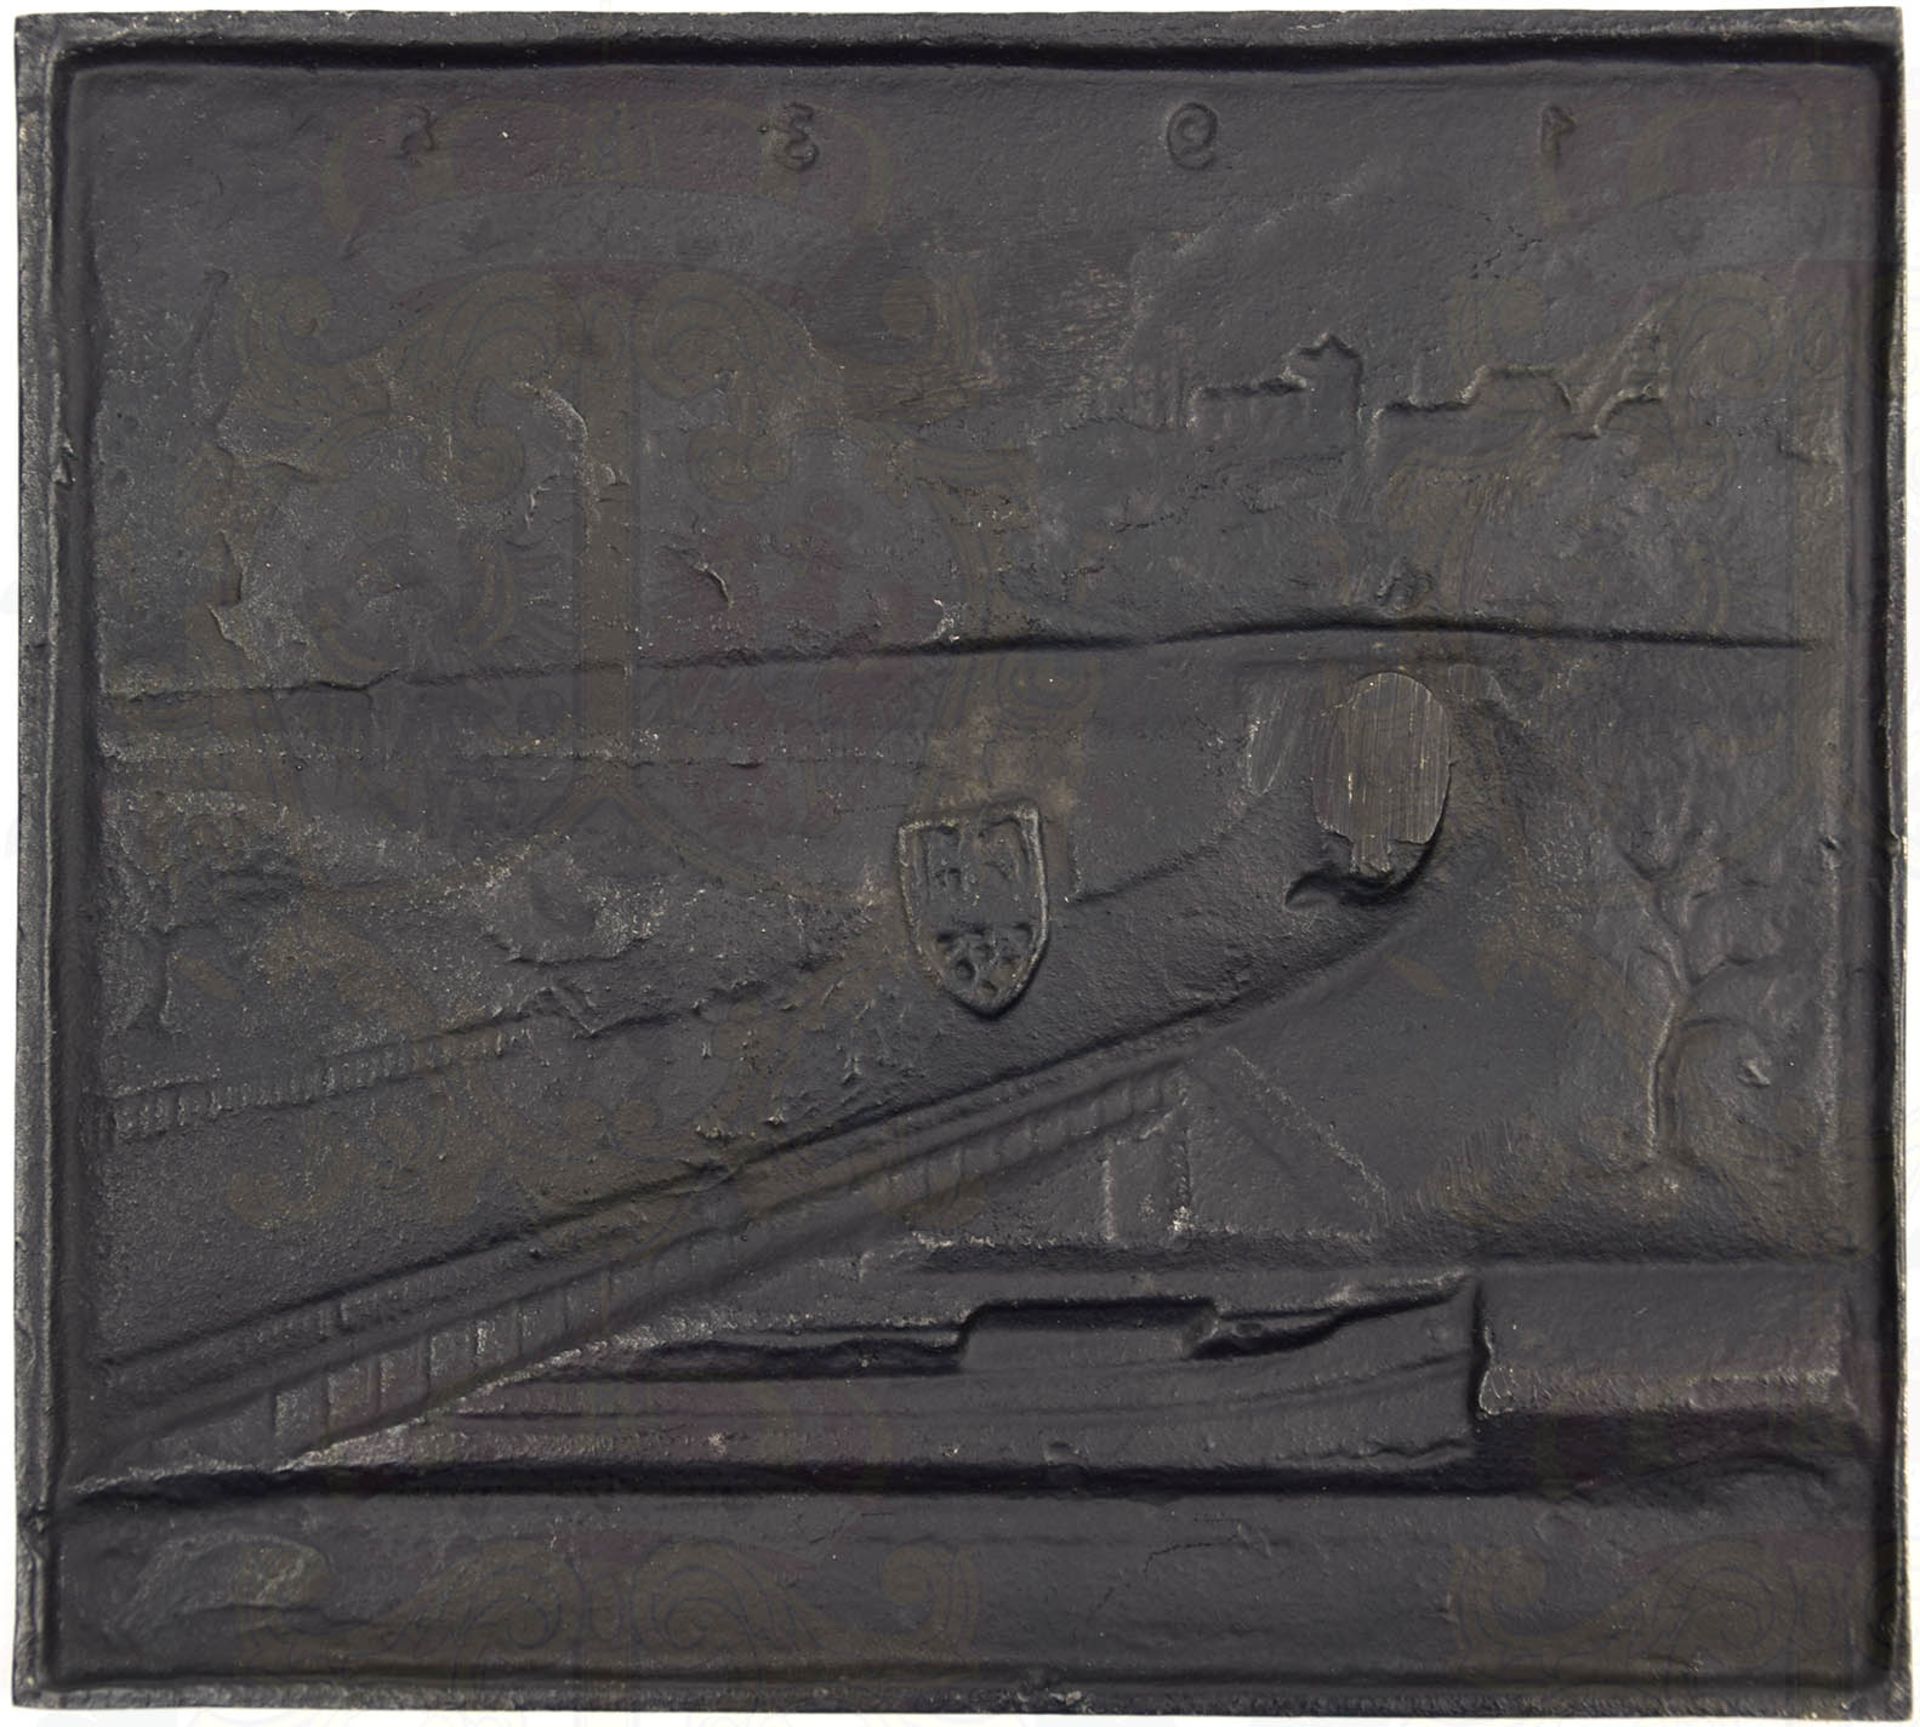 PLAKETTE „ALLER DINGE ANFANG LIEGT IN DER TAT“, 1938, Eisenguss/geschwärzt, flach relief. - Bild 2 aus 2